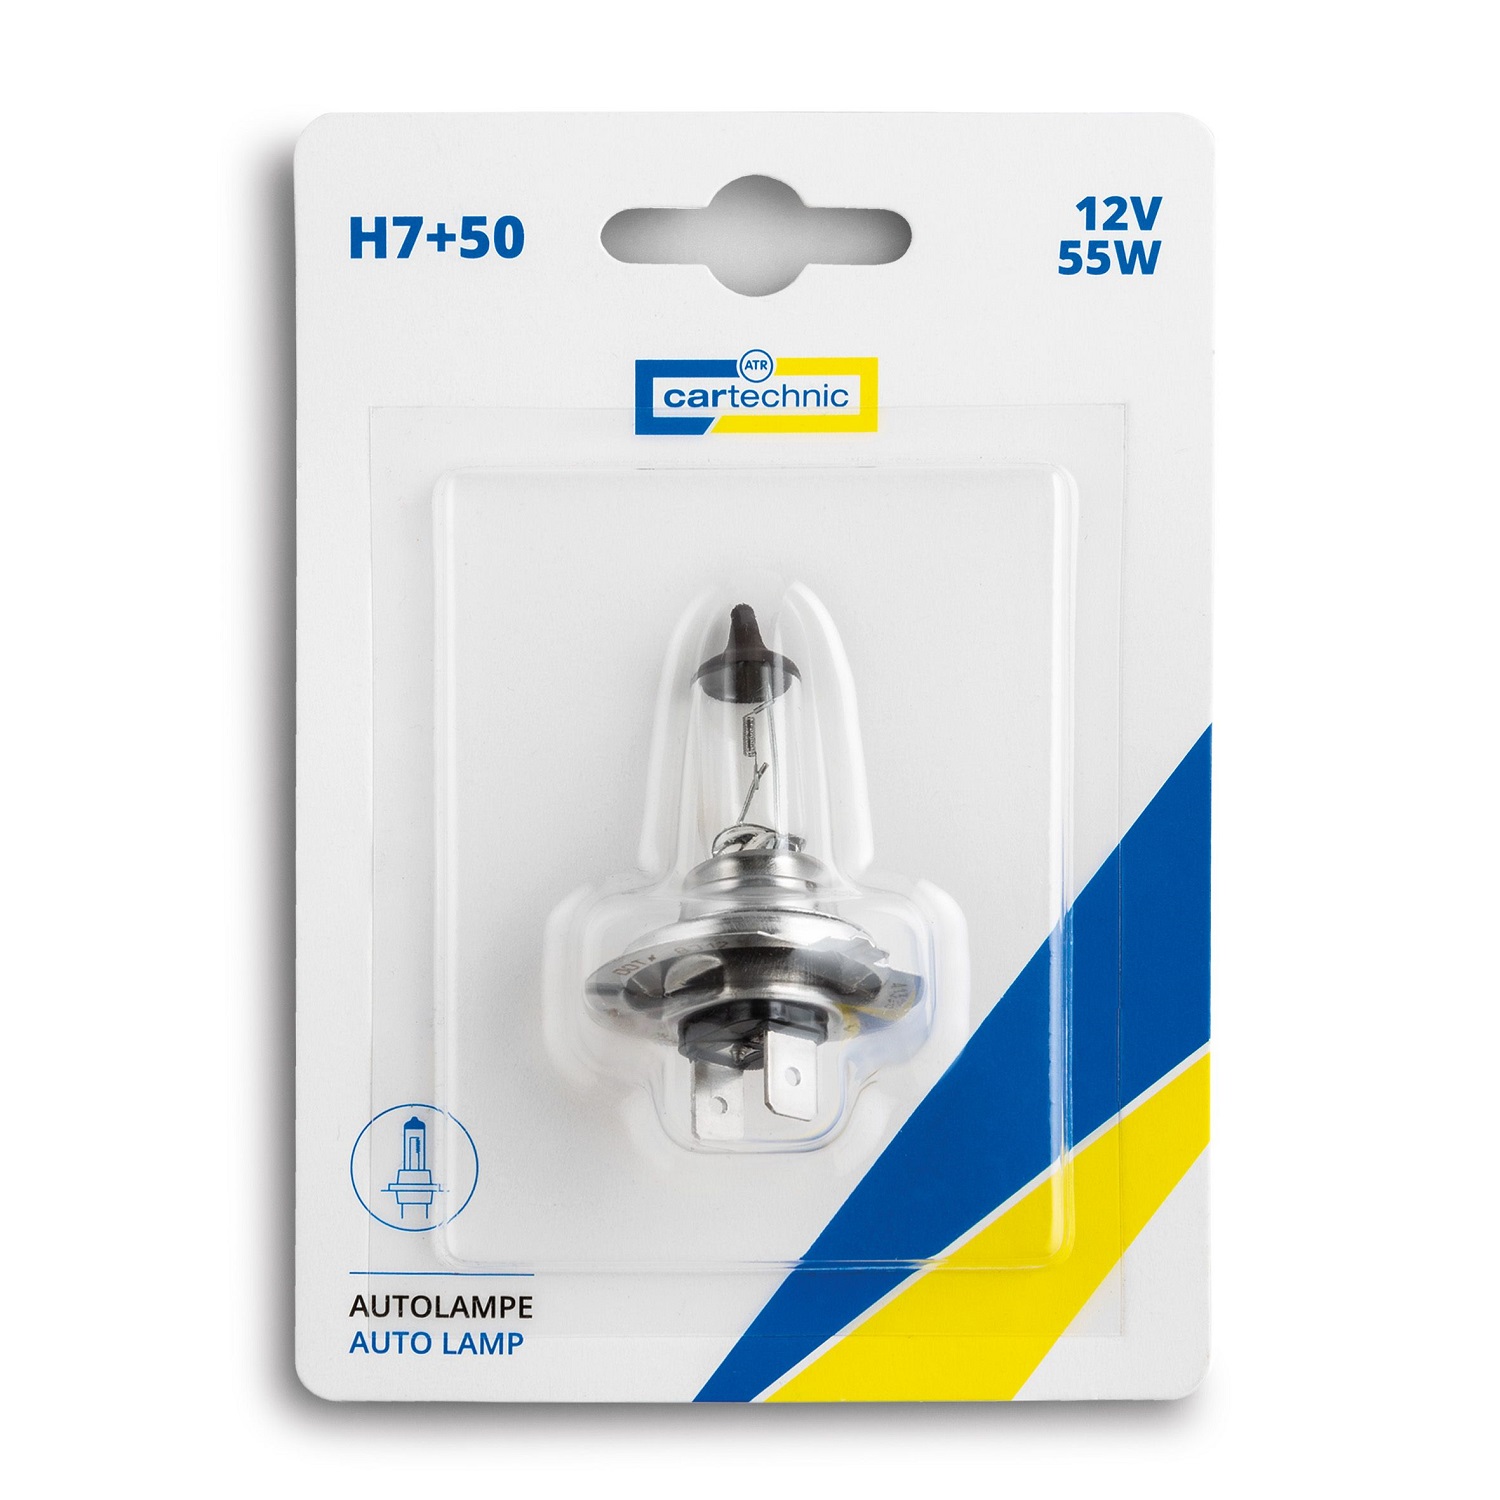 CARTECHNIC Incandescent light bulb headlight bulb H7 + 50% 12 Volt 55 Watt 40 27289 00602 4